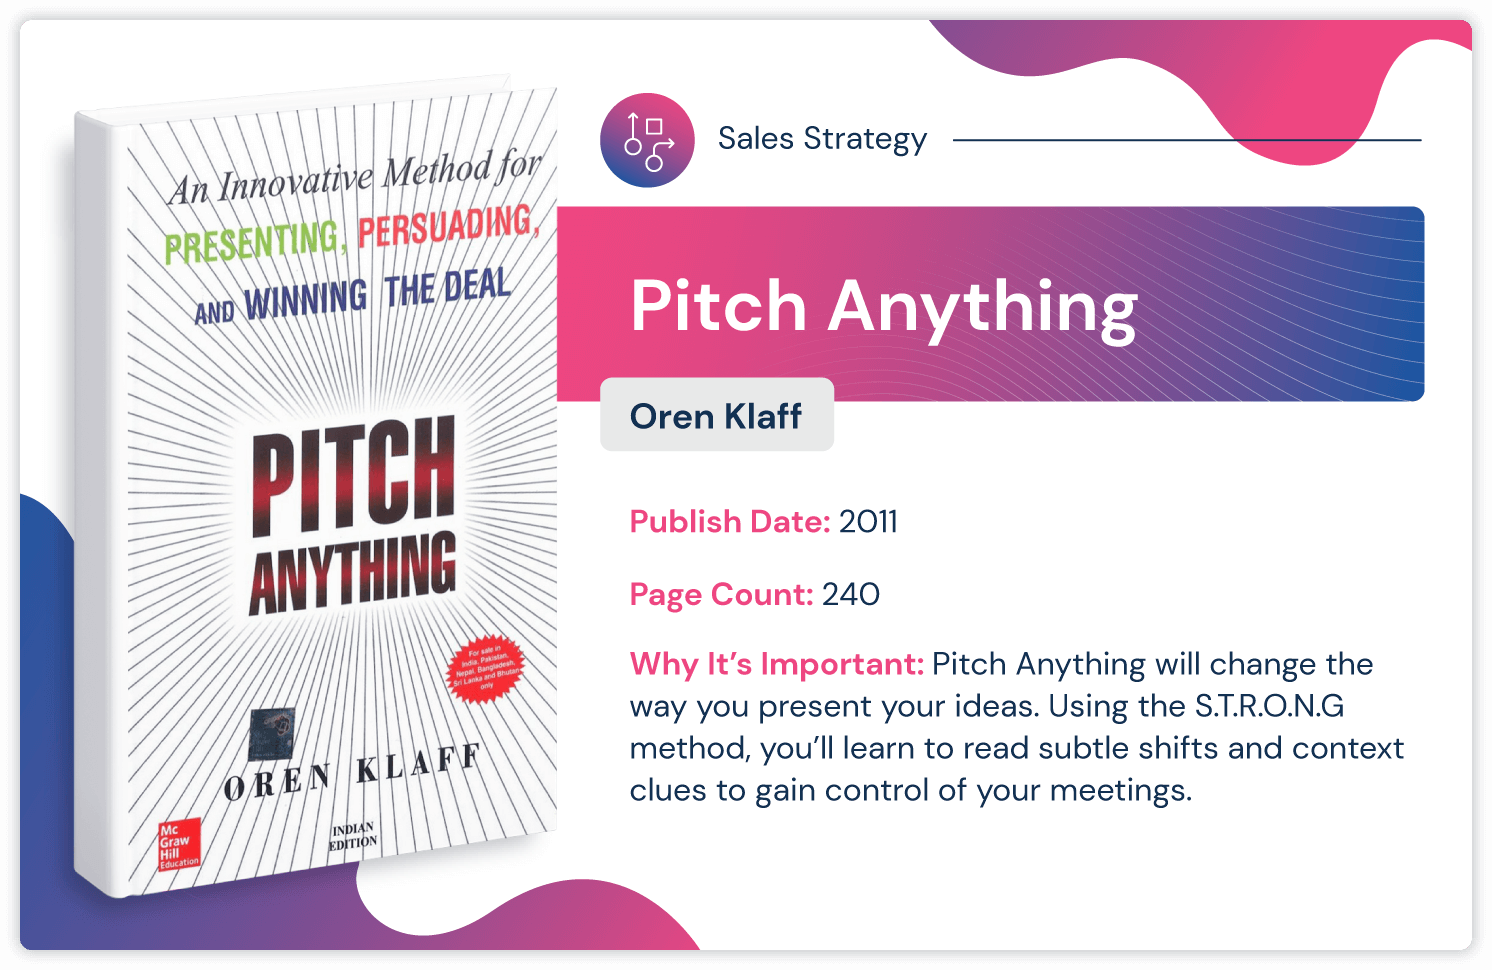 Книга о стратегии продаж «Pitch Anything» Орена Клаффа, опубликованная в 2011 году и объемом 240 страниц.